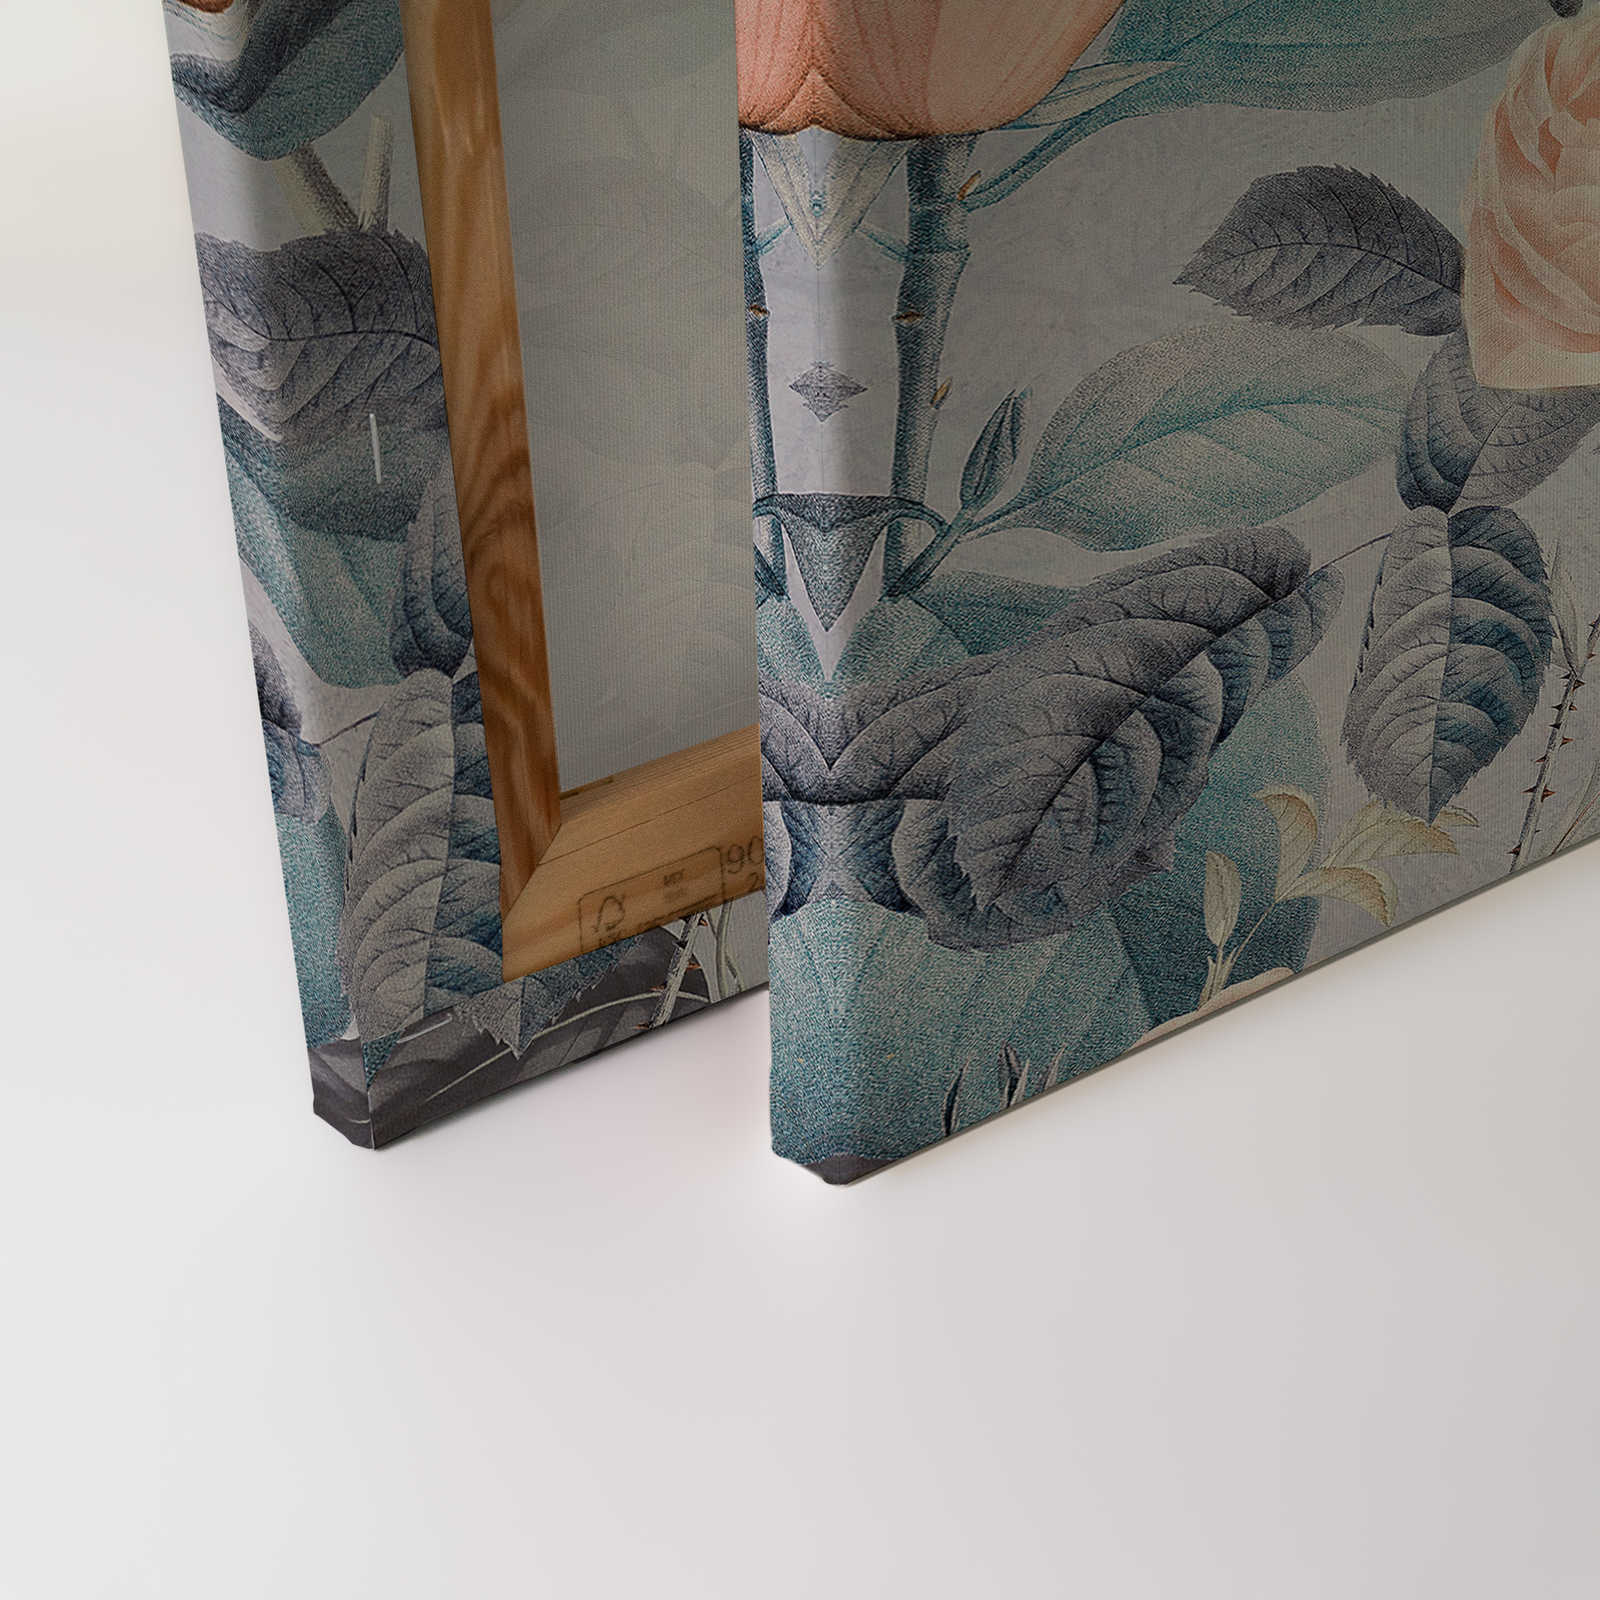             Tableau sur toile Perroquets Rendez-vous avec le design des fleurs - 1,20 m x 0,80 m
        